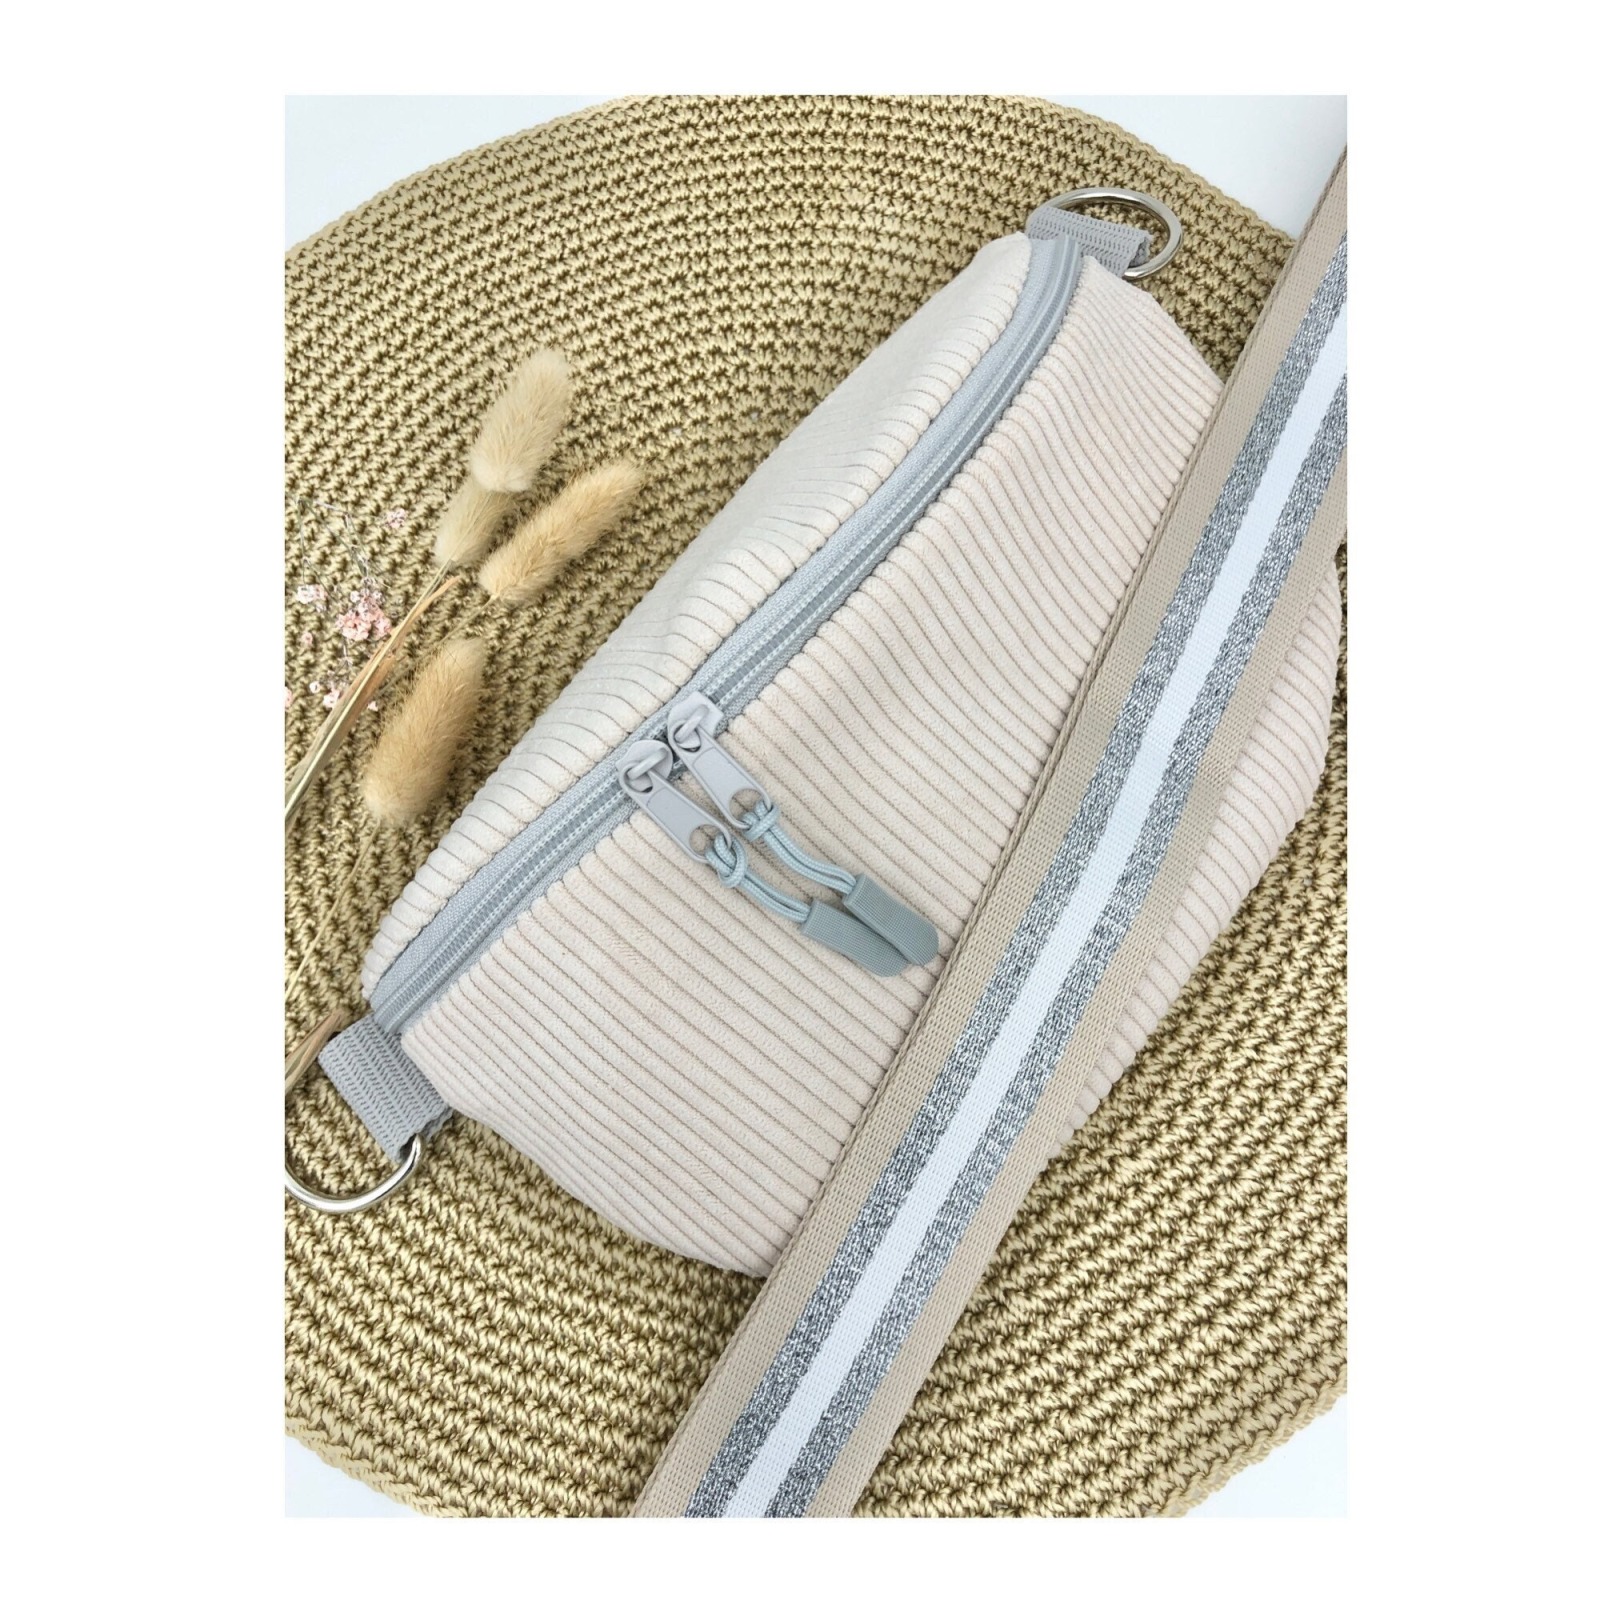 Bauchtasche Crossbag Cord cremeweiß mit Taschengurt in beige weiß silber Tasche Hipbag leicht und